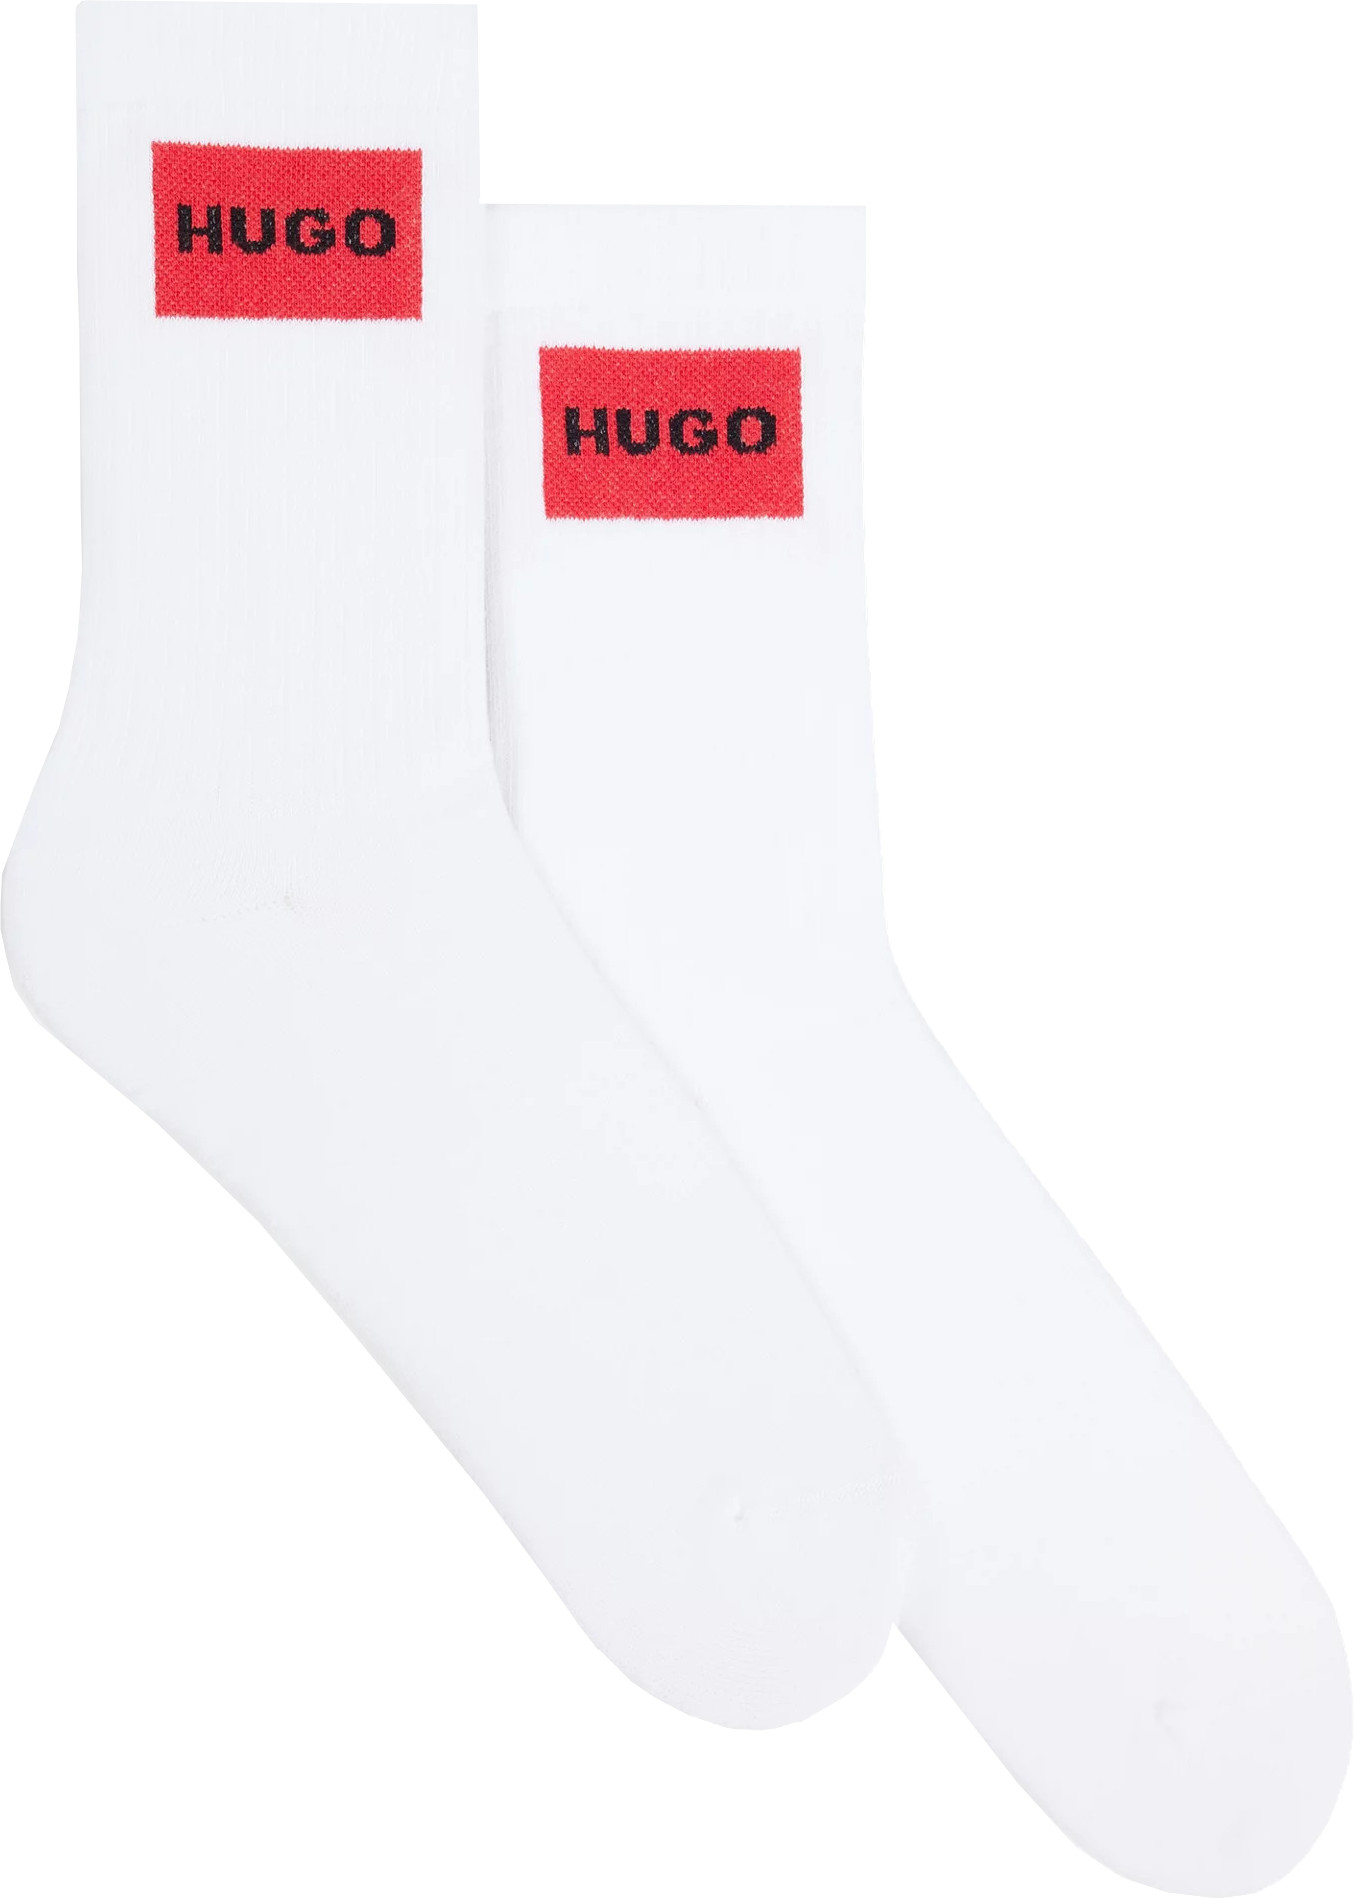 Hugo Boss 2 PACK - pánske ponožky HUGO 50510640-100 43-46